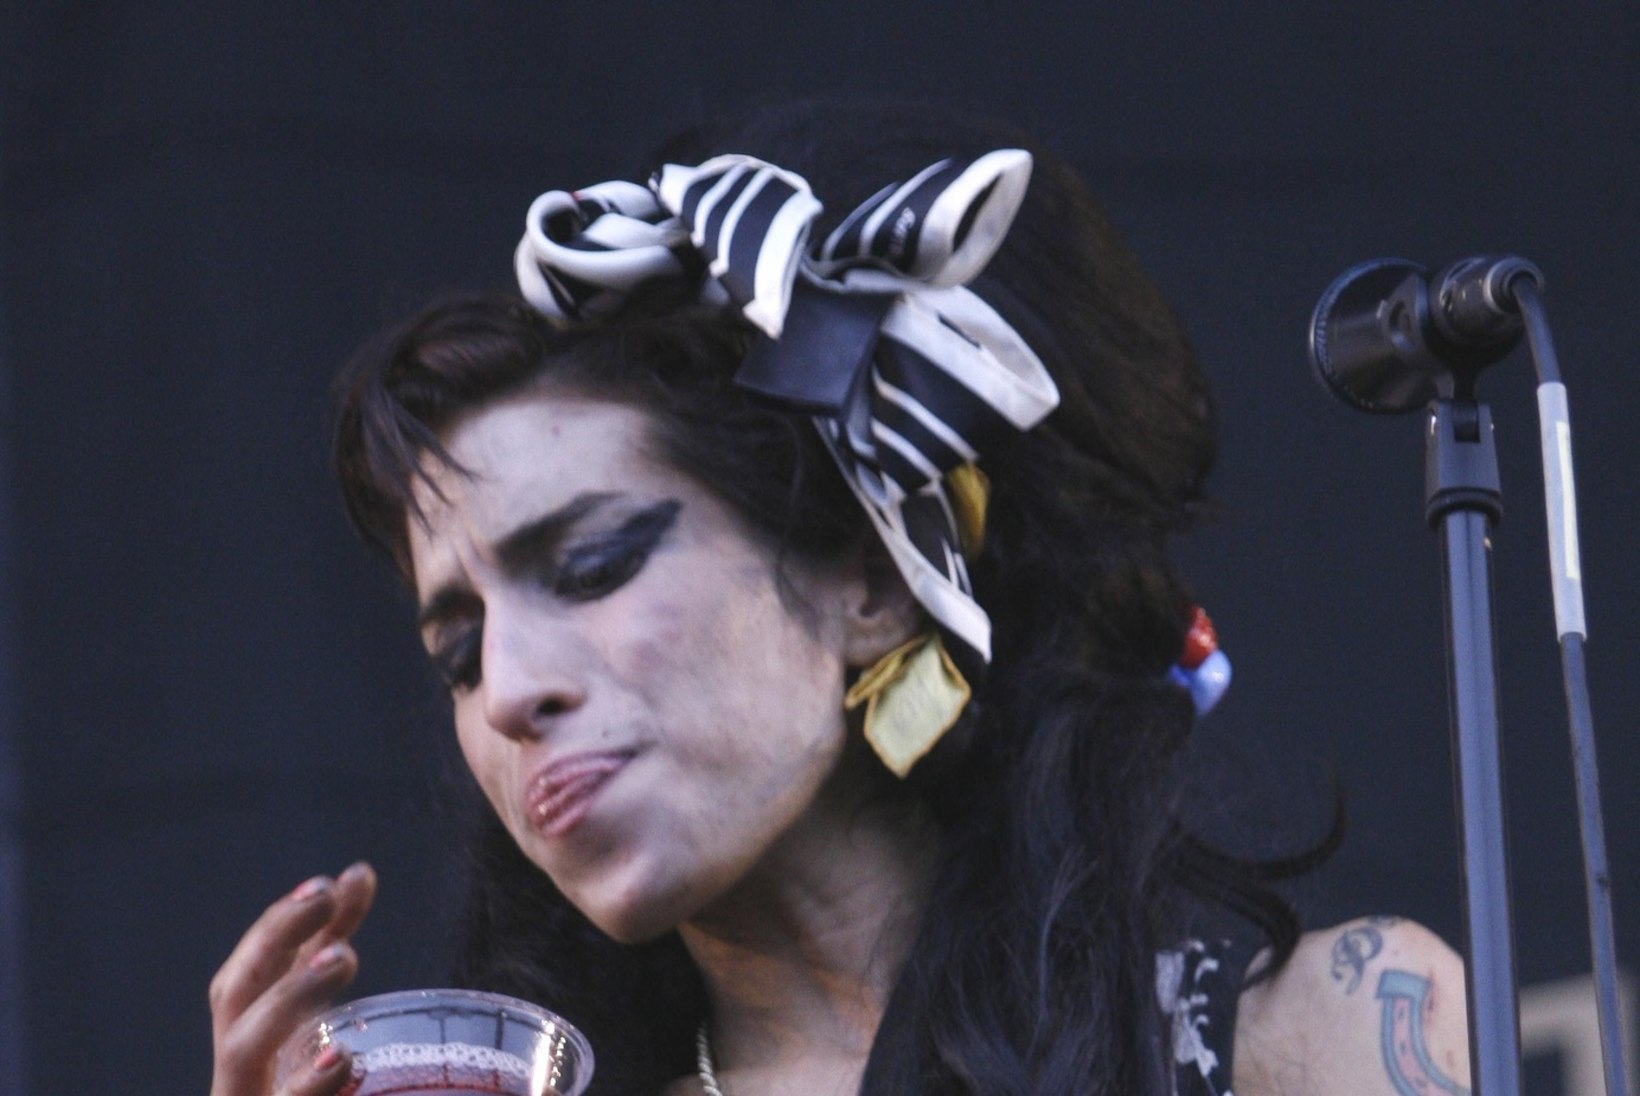 Kas vanaema kaardipakk ennustas Amy Winehouse'ile surma?